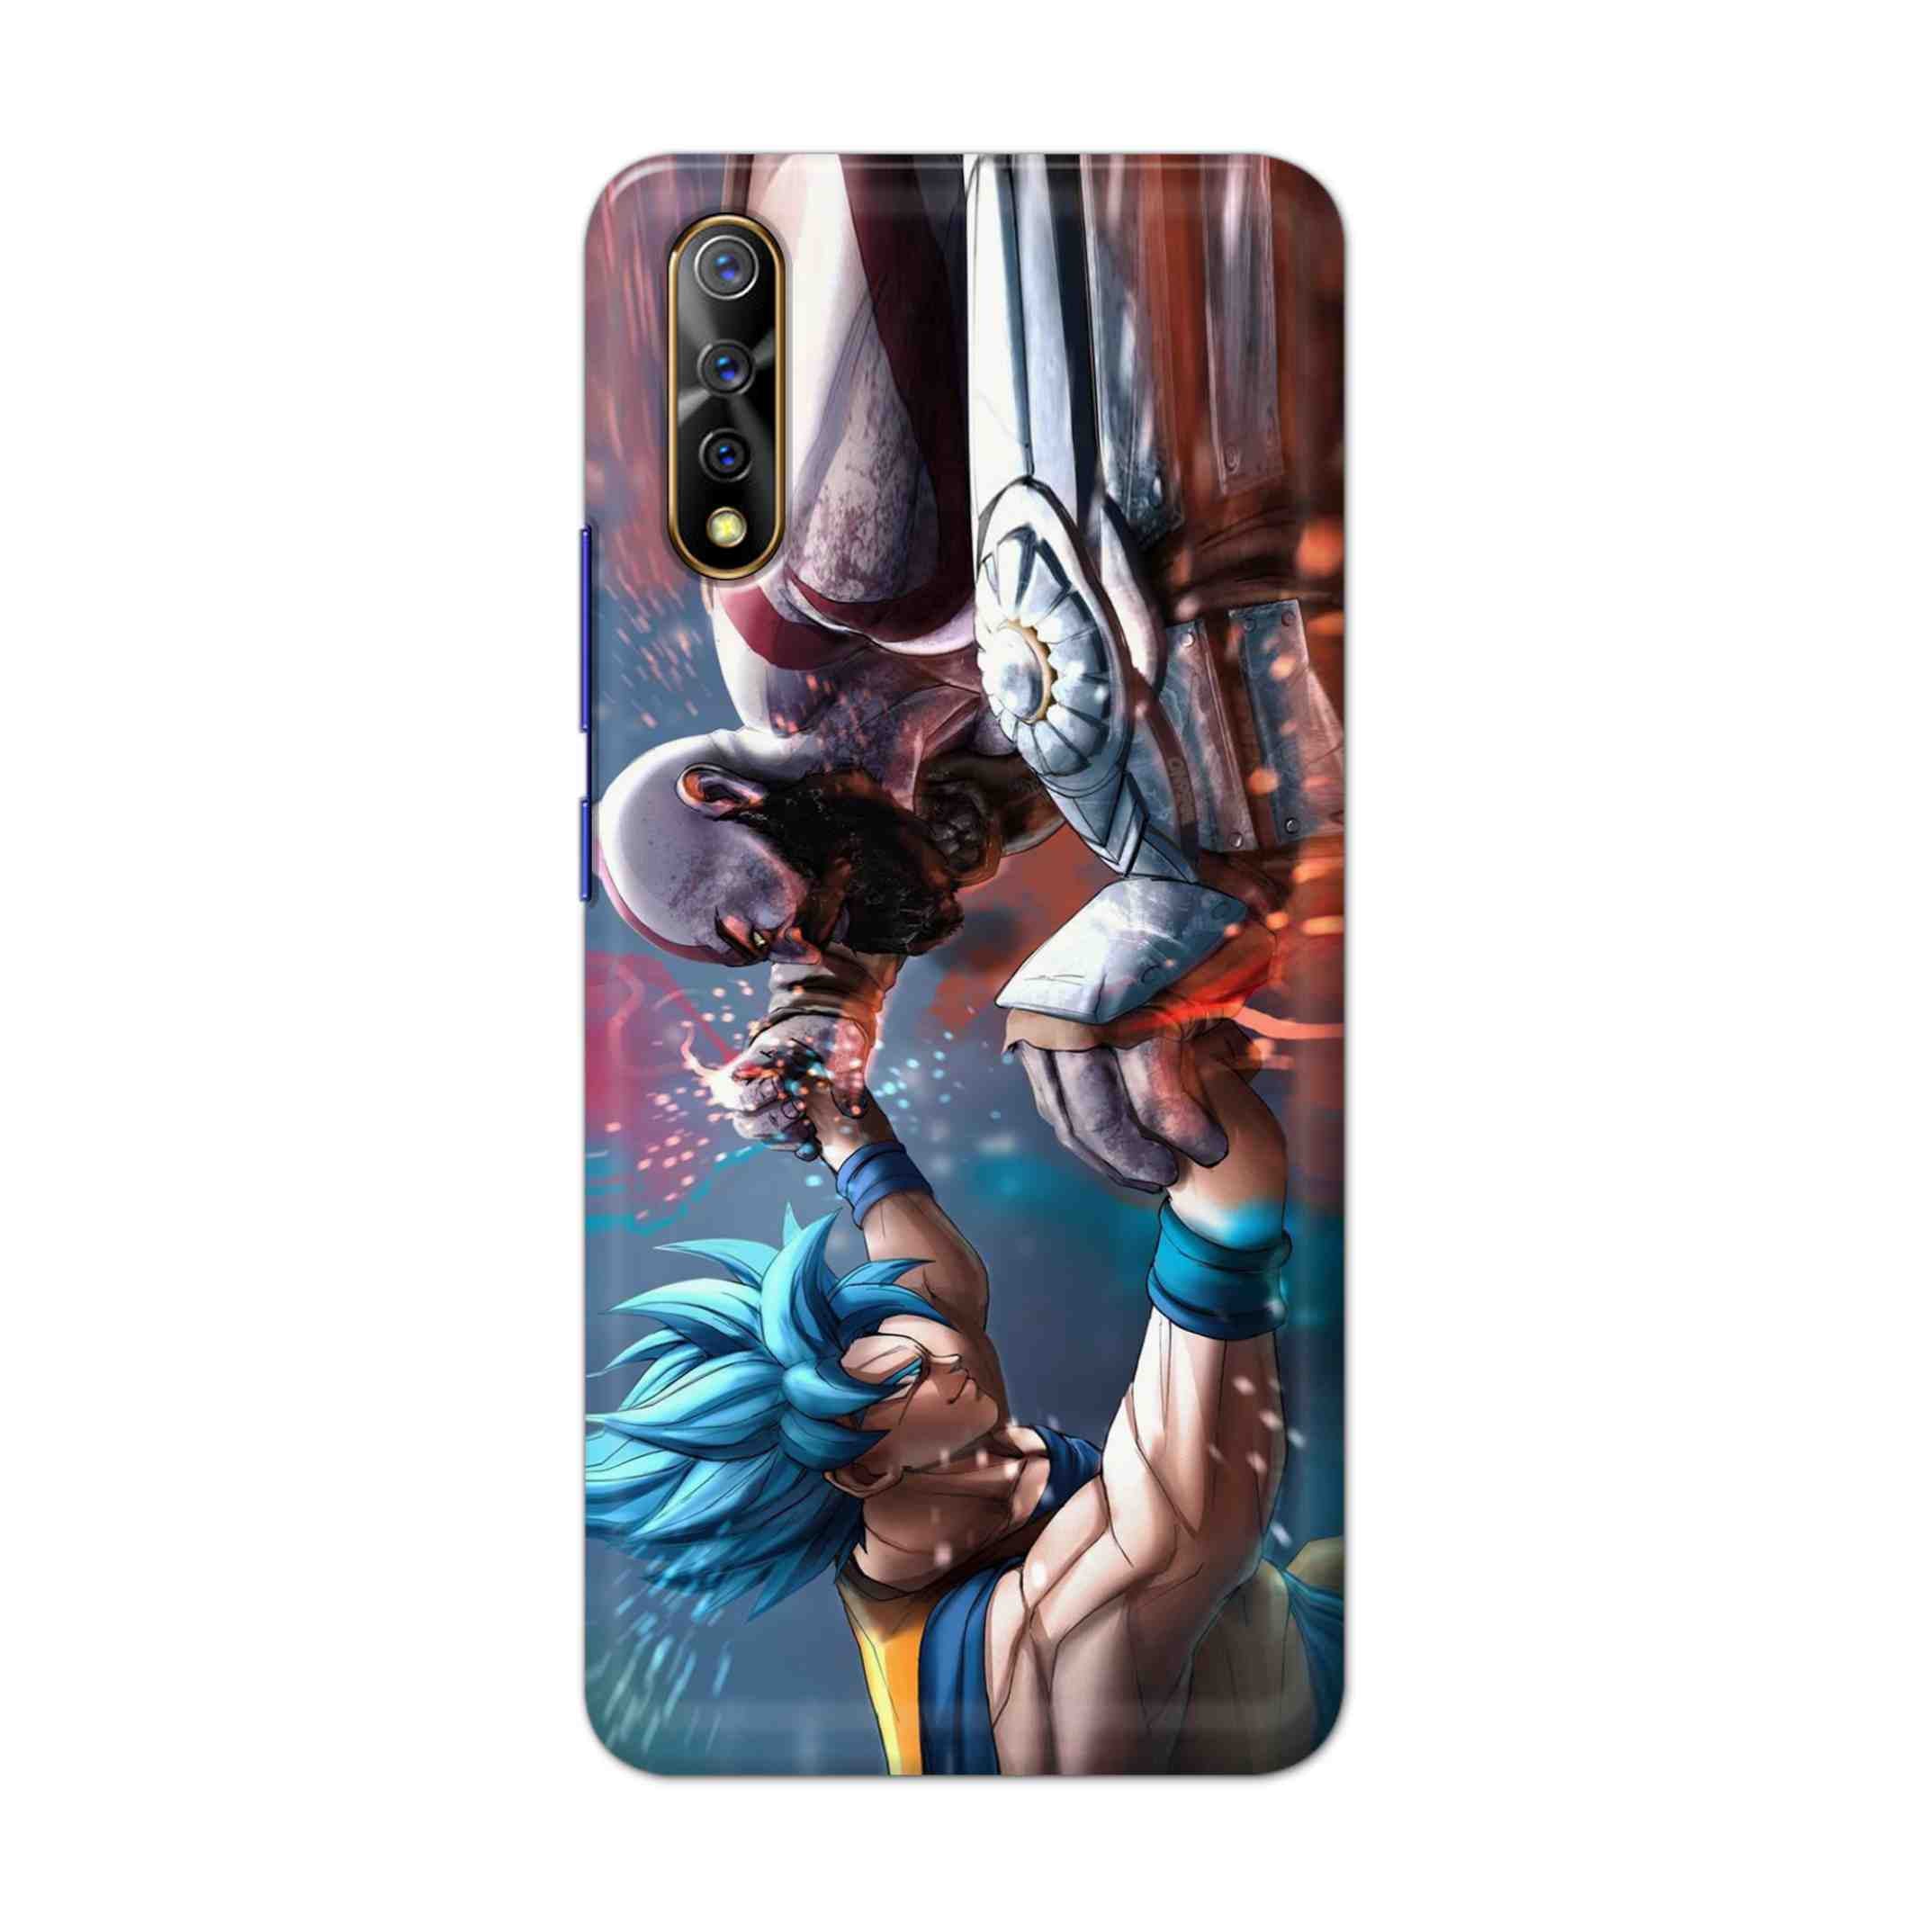 Buy Goku Vs Kratos Hard Back Mobile Phone Case Cover For Vivo S1 / Z1x Online